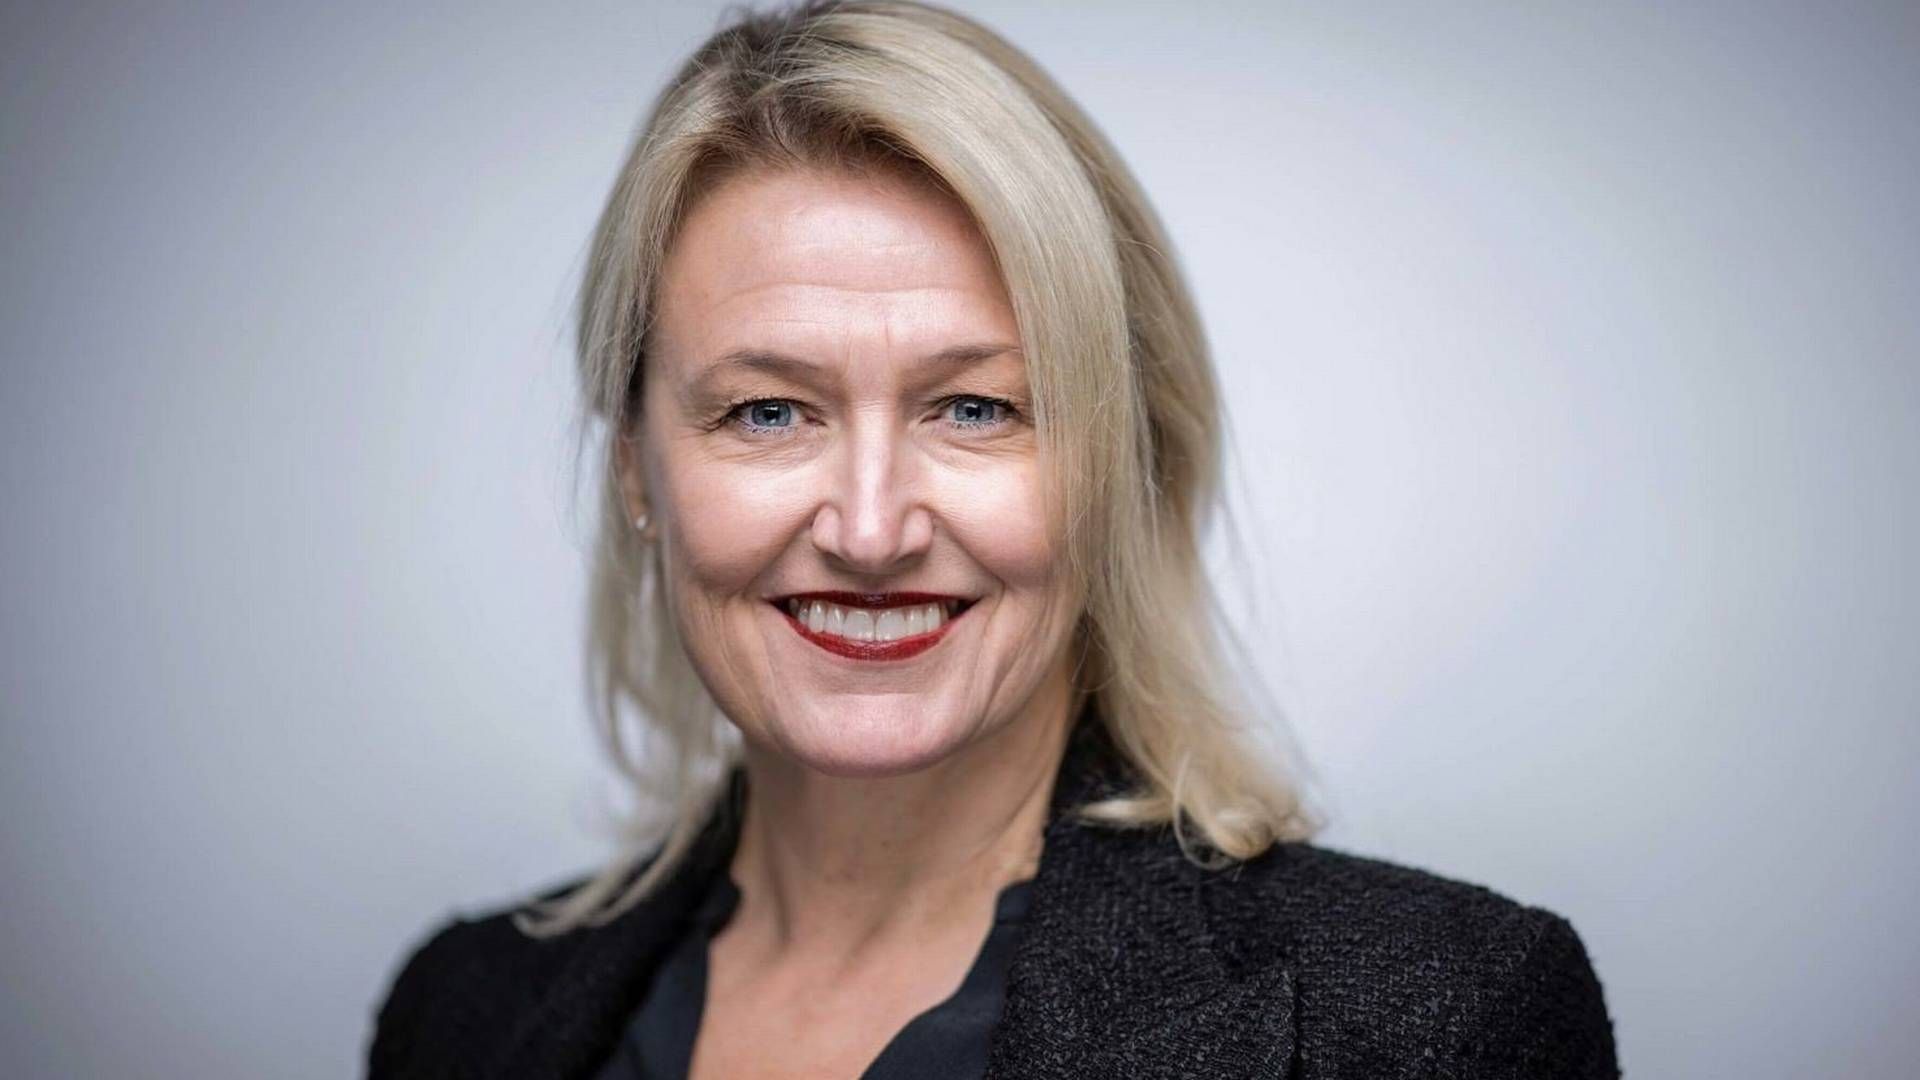 NY JOBB: Ingrid Therese Tjøsvold bytter beite neste år. | Foto: Norsk Gjenvinning